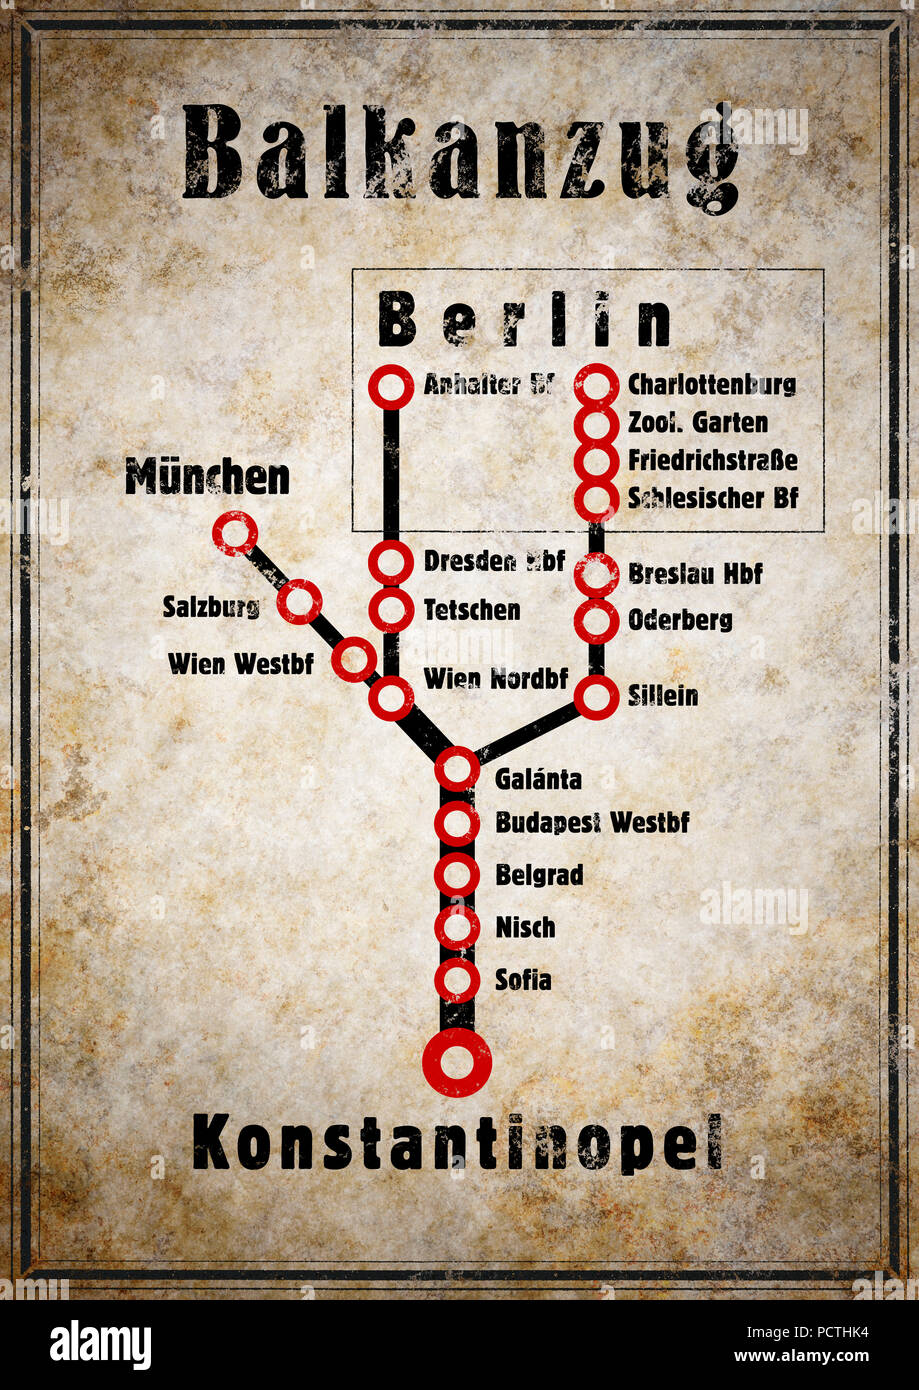 Tren de los Balcanes, horario de trenes, Berlin - Constantinopla, gráfico RailArt Foto de stock